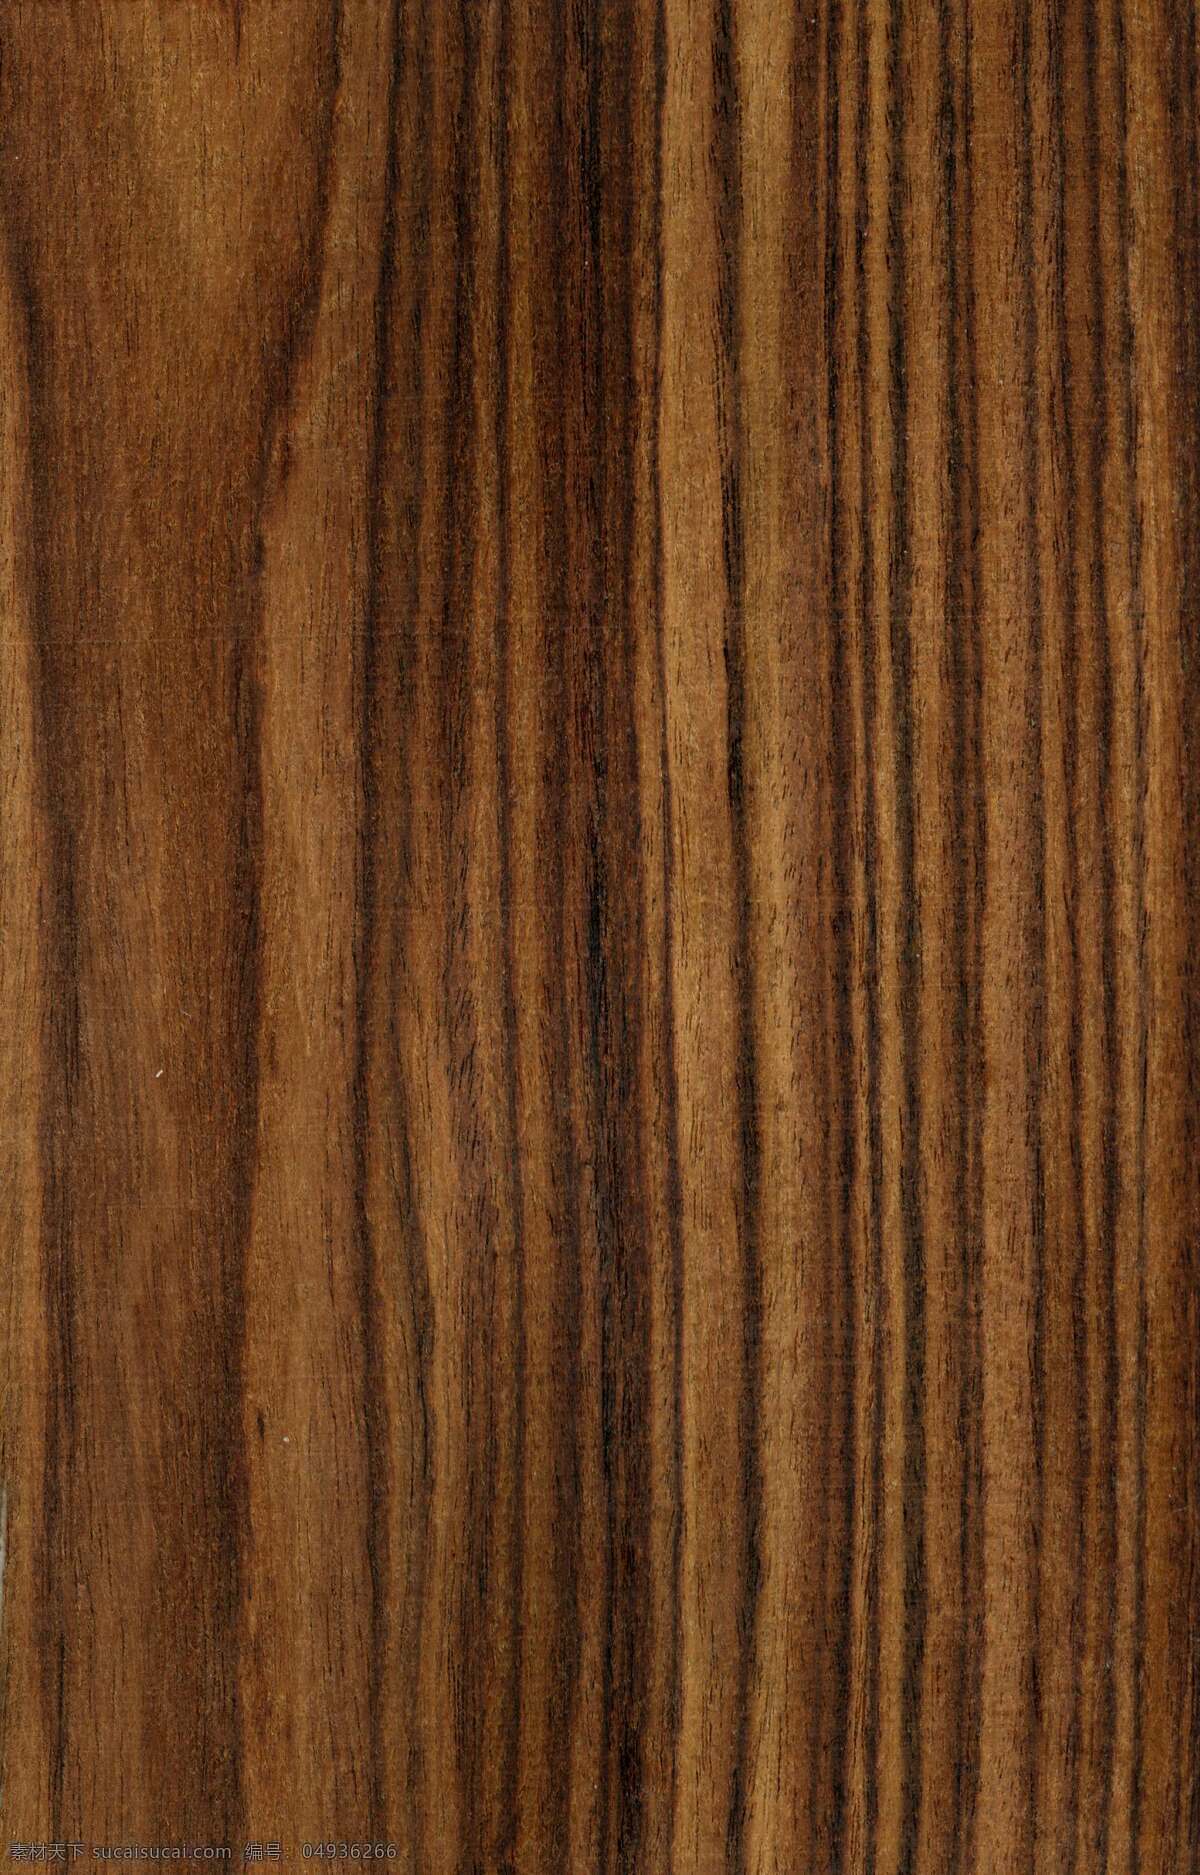 生态 木 纹理 贴图 生态木天花 生态木地板 生态木墙板 木制品 木制品公司 生态木长城 木制品销售 木制品产品 木制品出口 木制品生产 木制品价格